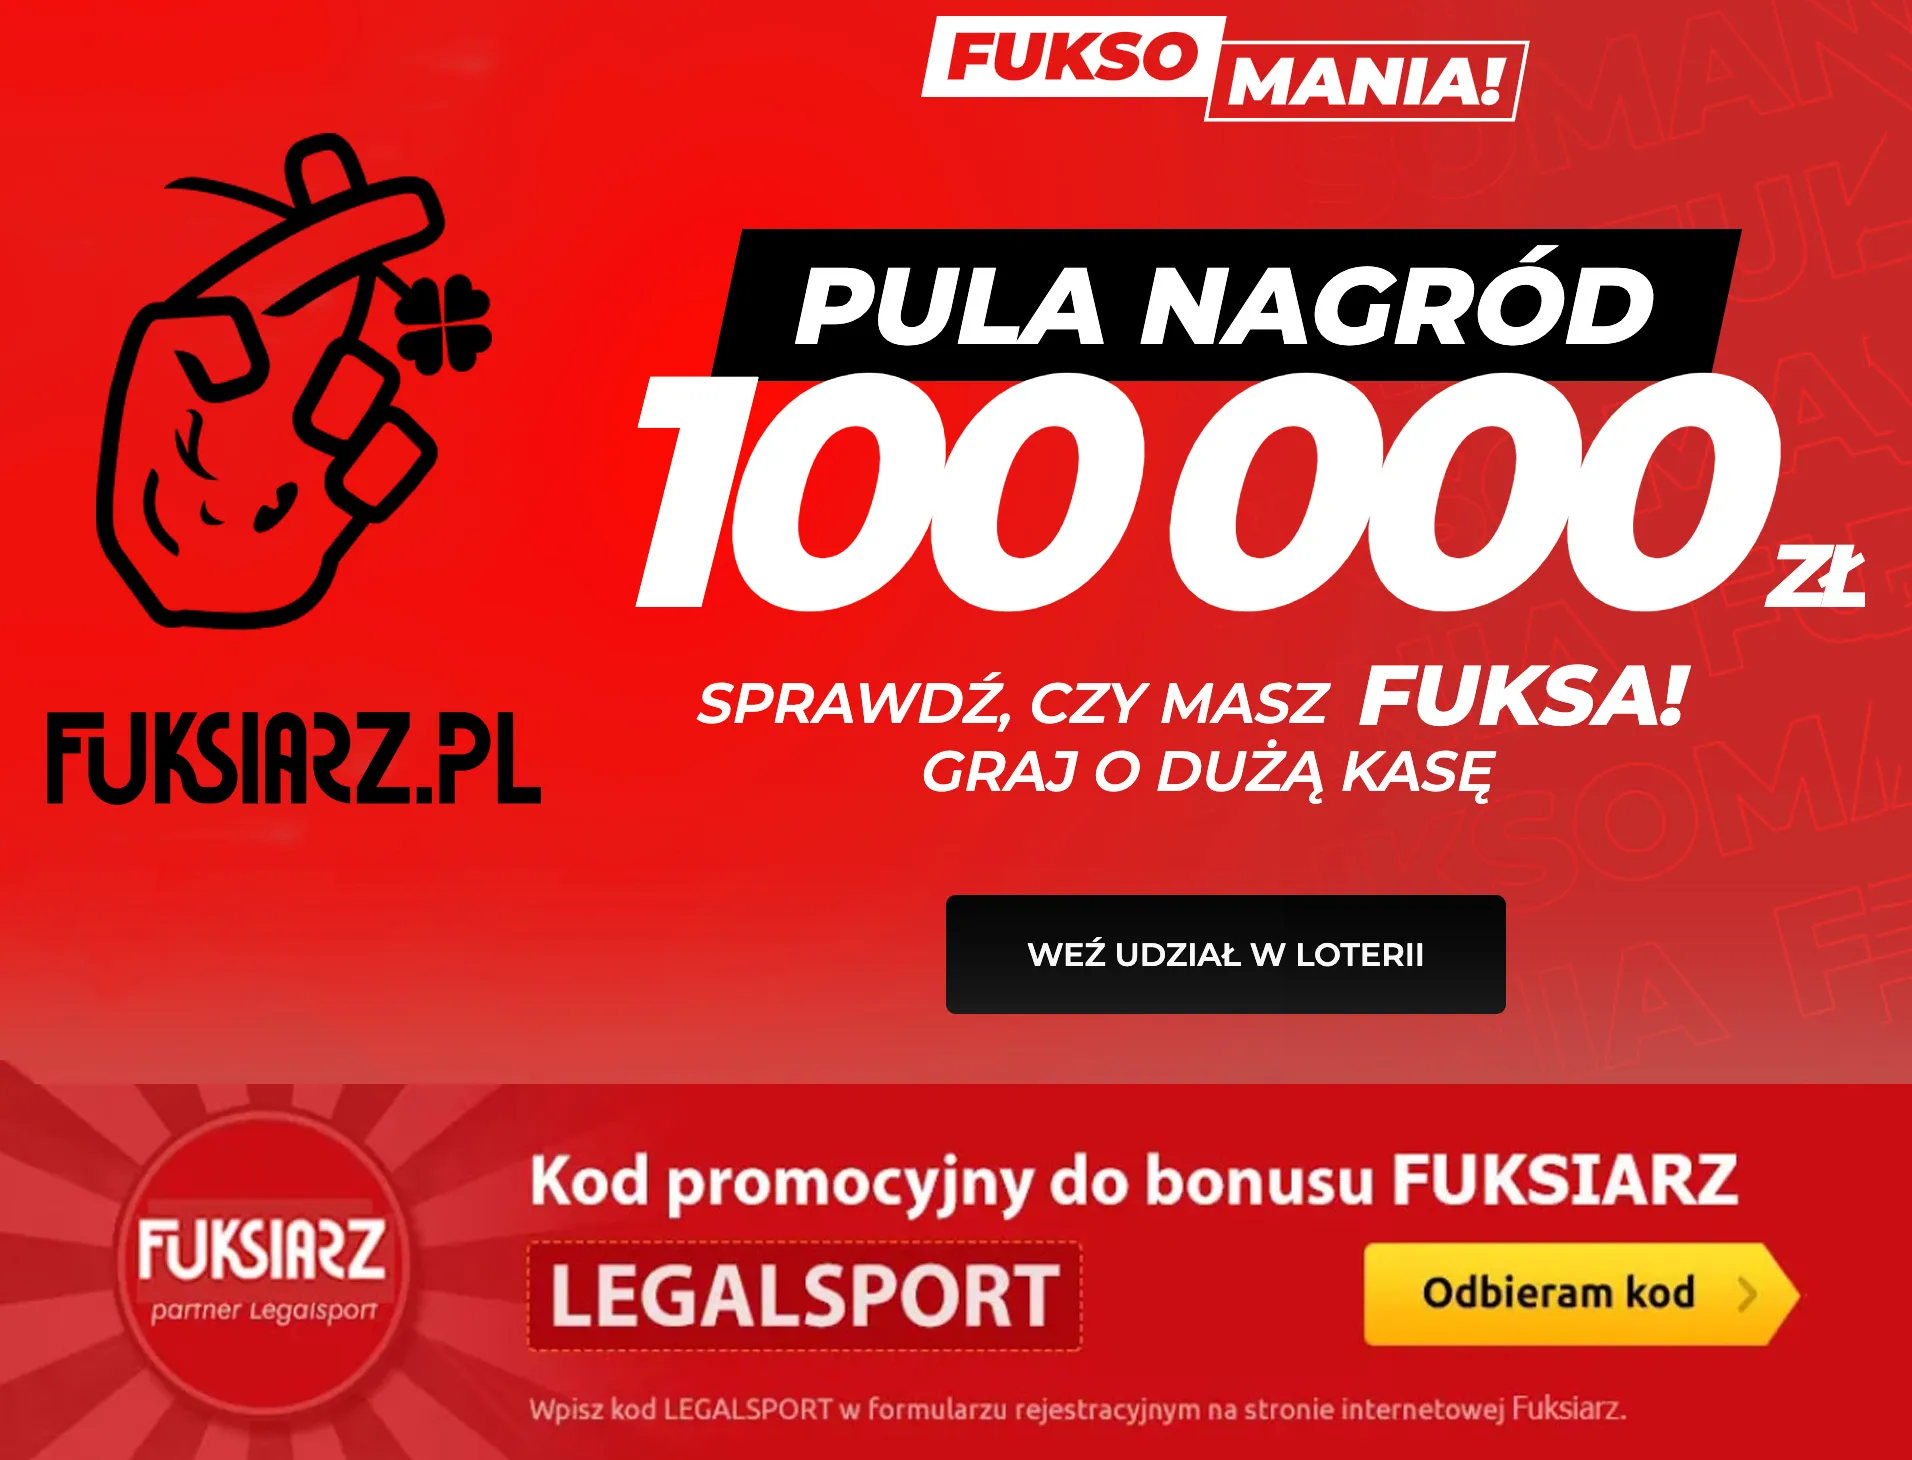 Weź udział w Fuksomanii z pulą nagród 100000 zł